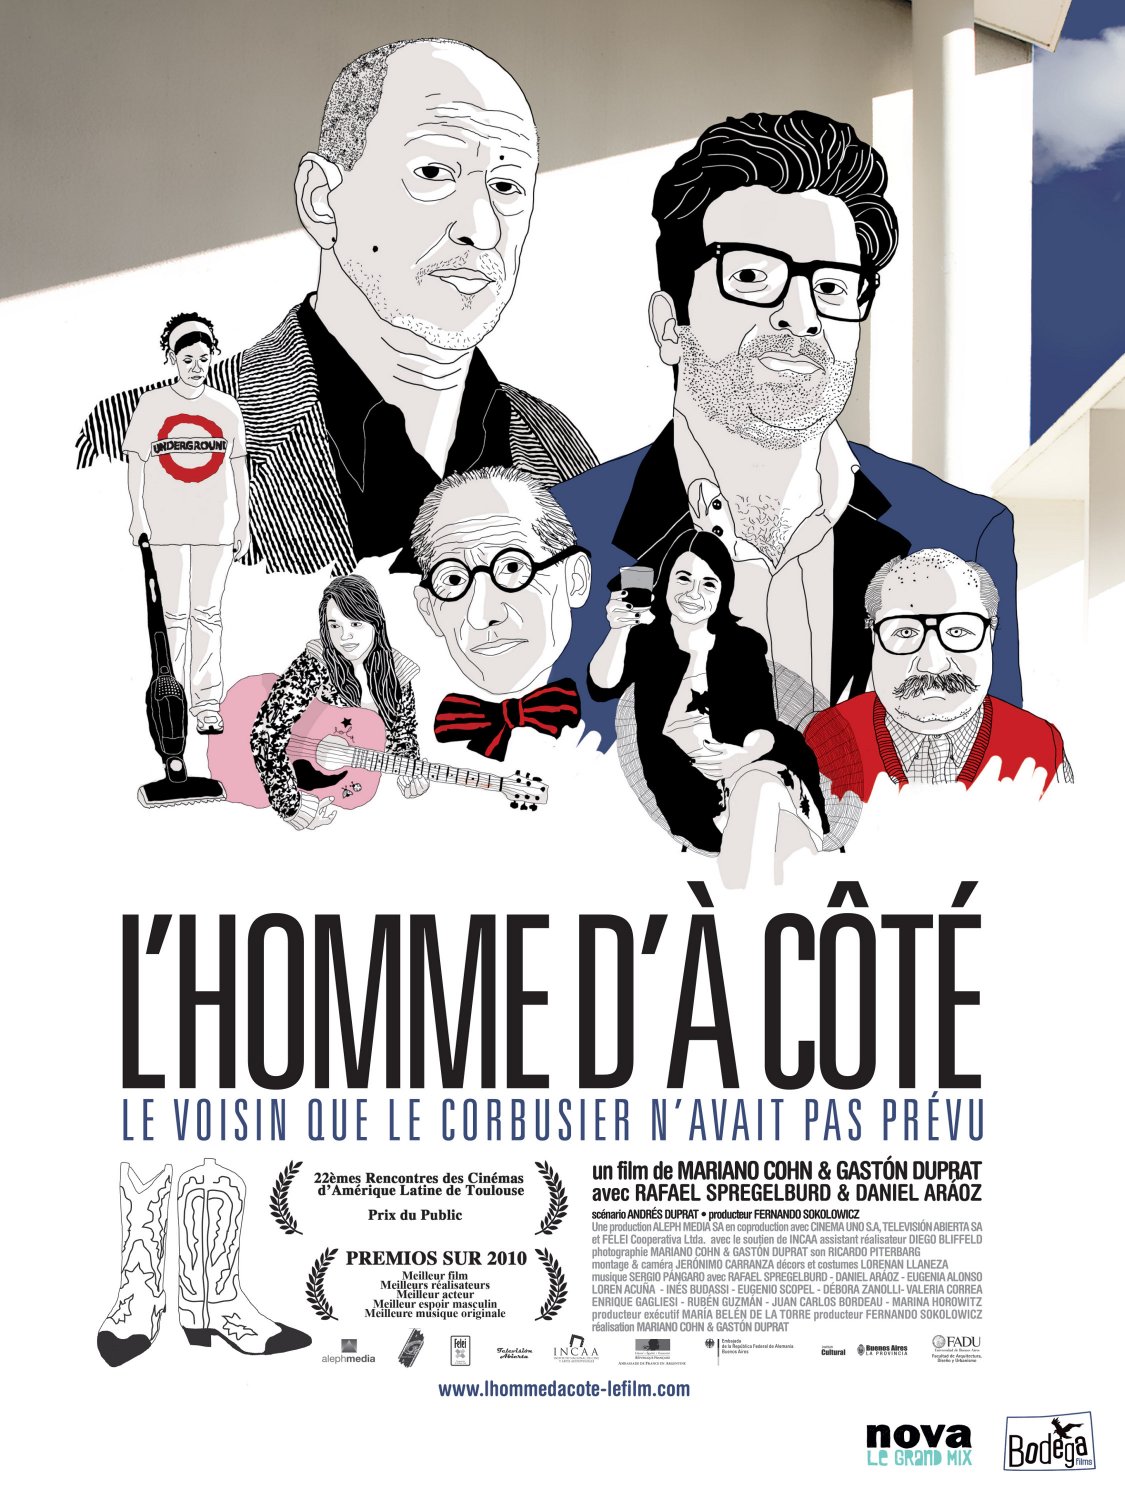 Extra Large Movie Poster Image for El hombre de al lado (#2 of 2)